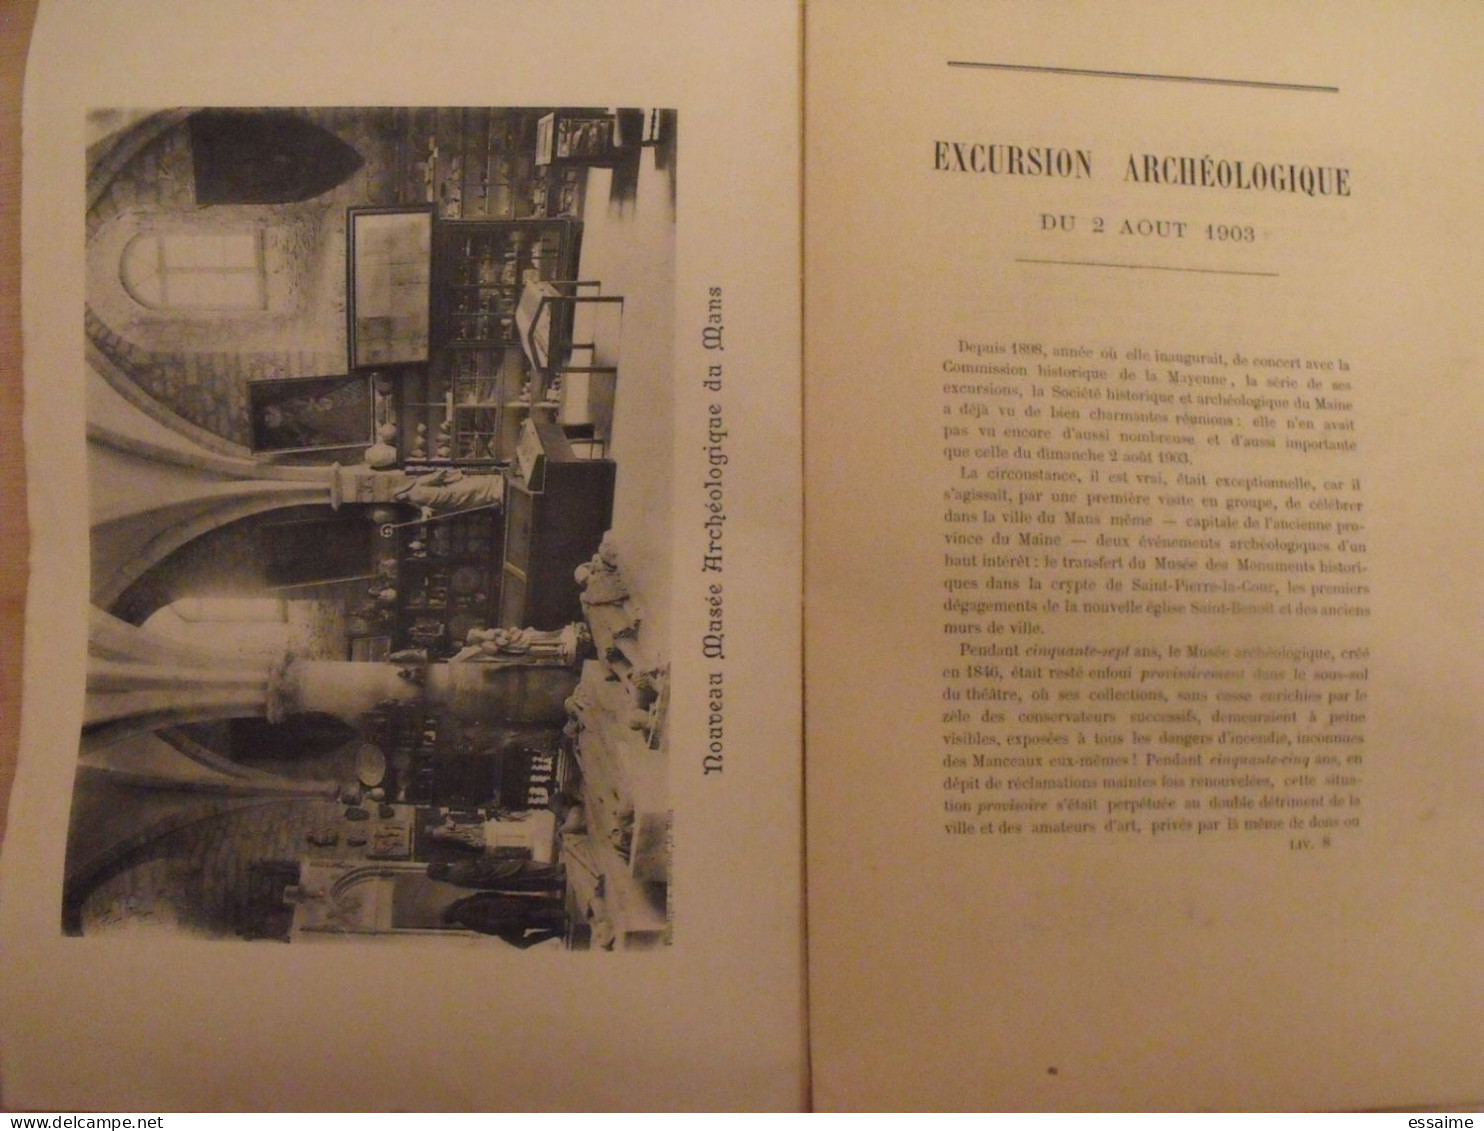 revue historique et archéologique du Maine. année 1903, 2ème semestre (3 livraisons). tome LIV. Mamers, Le Mans